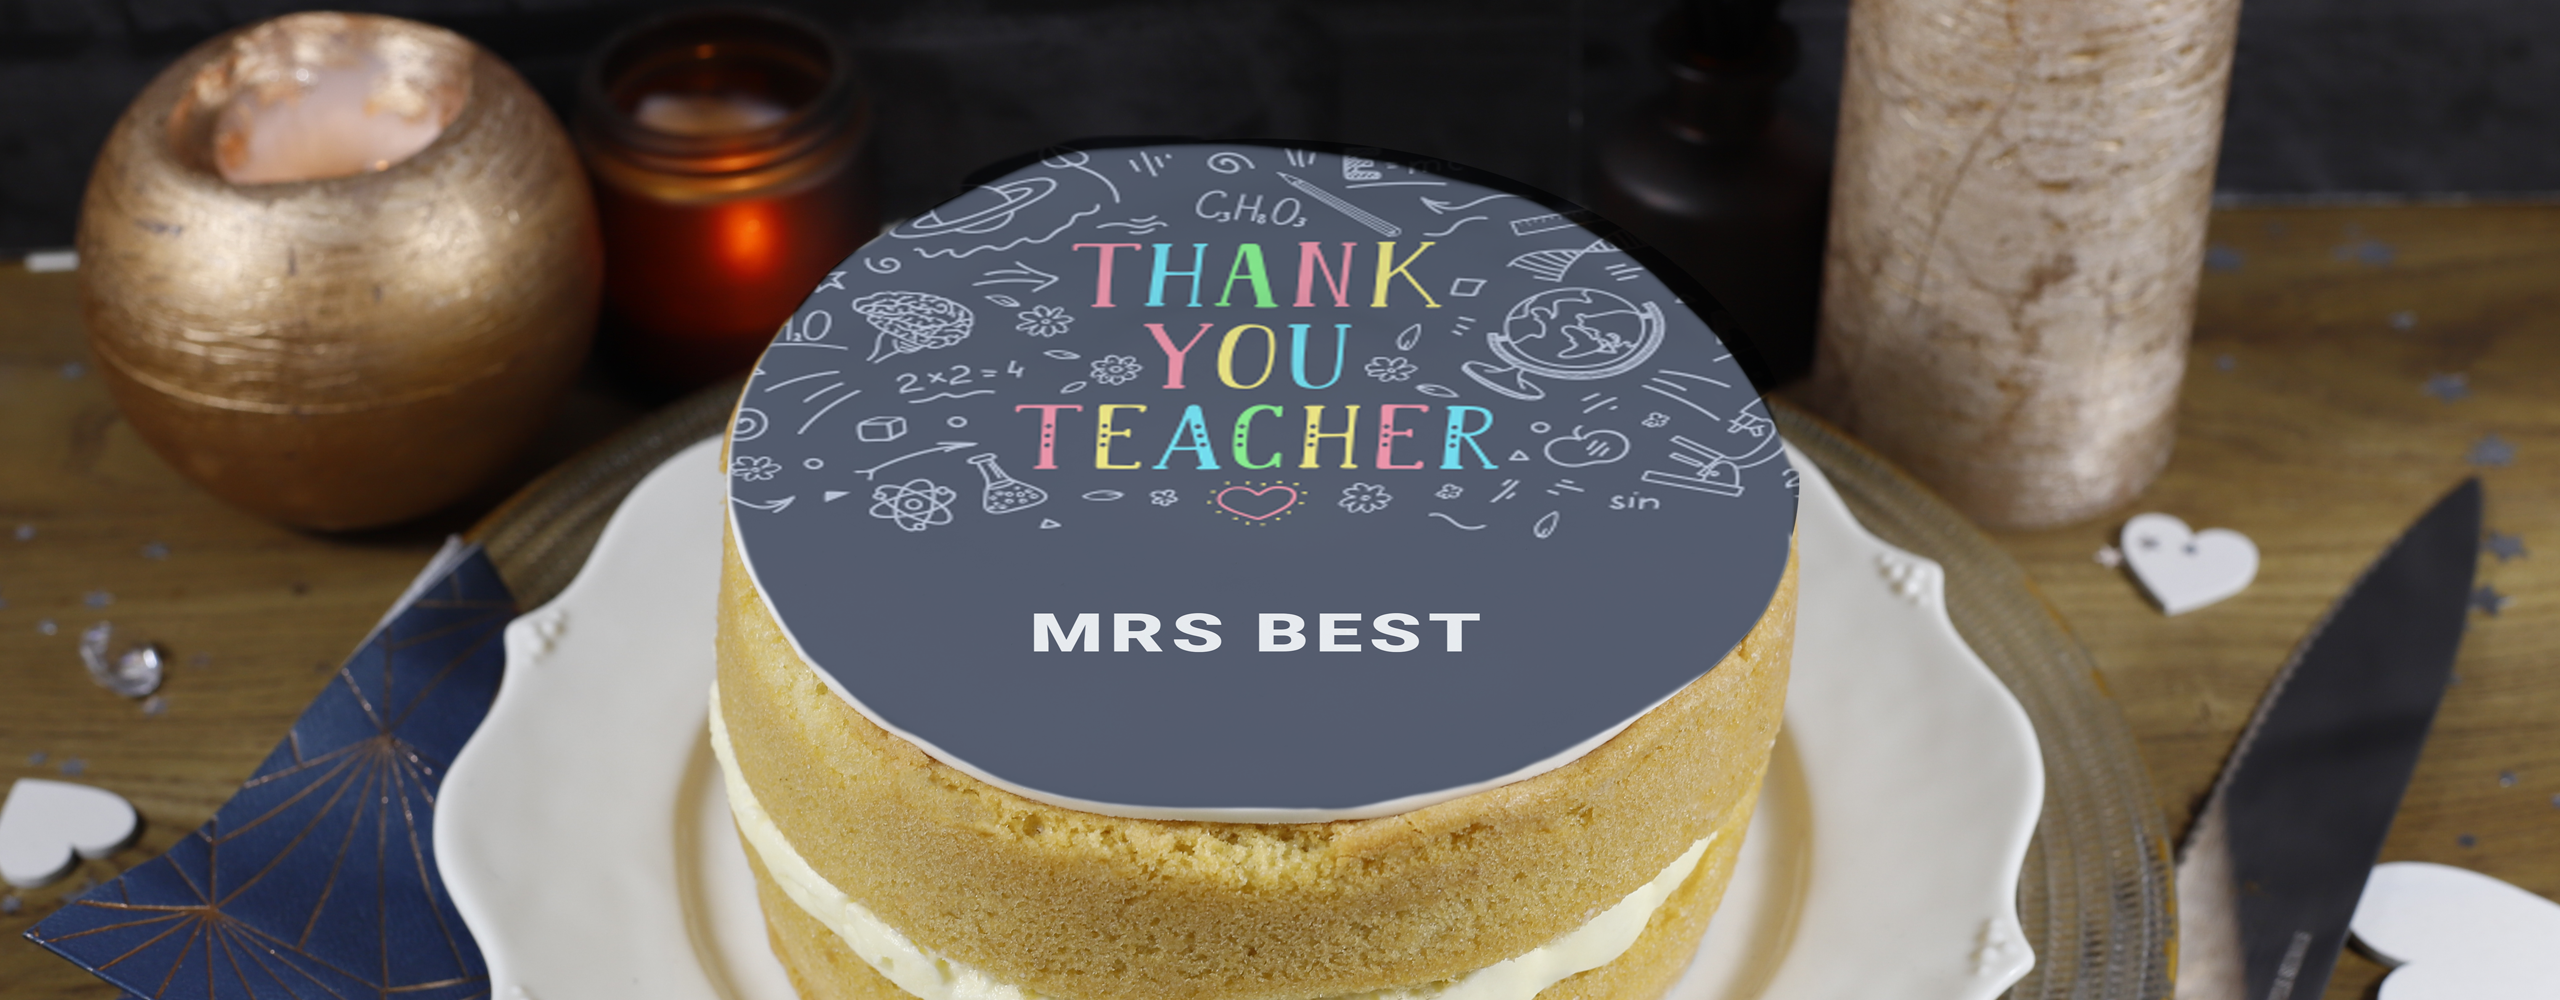 Best Teacher Theme Cake In Ahmedabad | Order Online